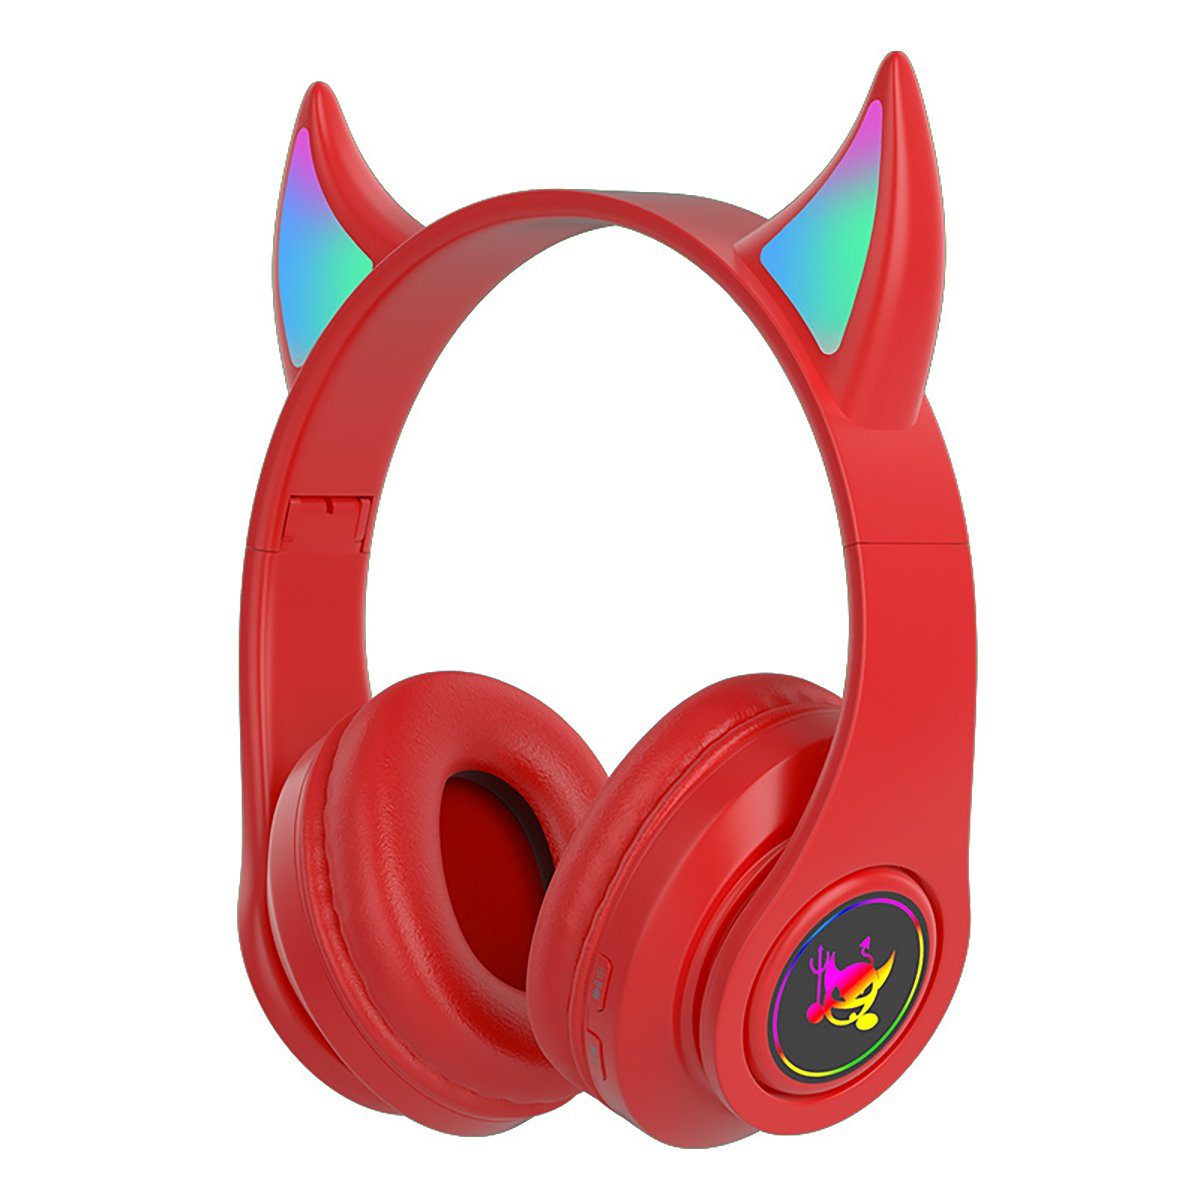 LED-Licht) 5.0 (Kabelloses On-Ear-Kopfhörer Insma Stero Gaming-Headset, bluetooth Rot Kopfhörer